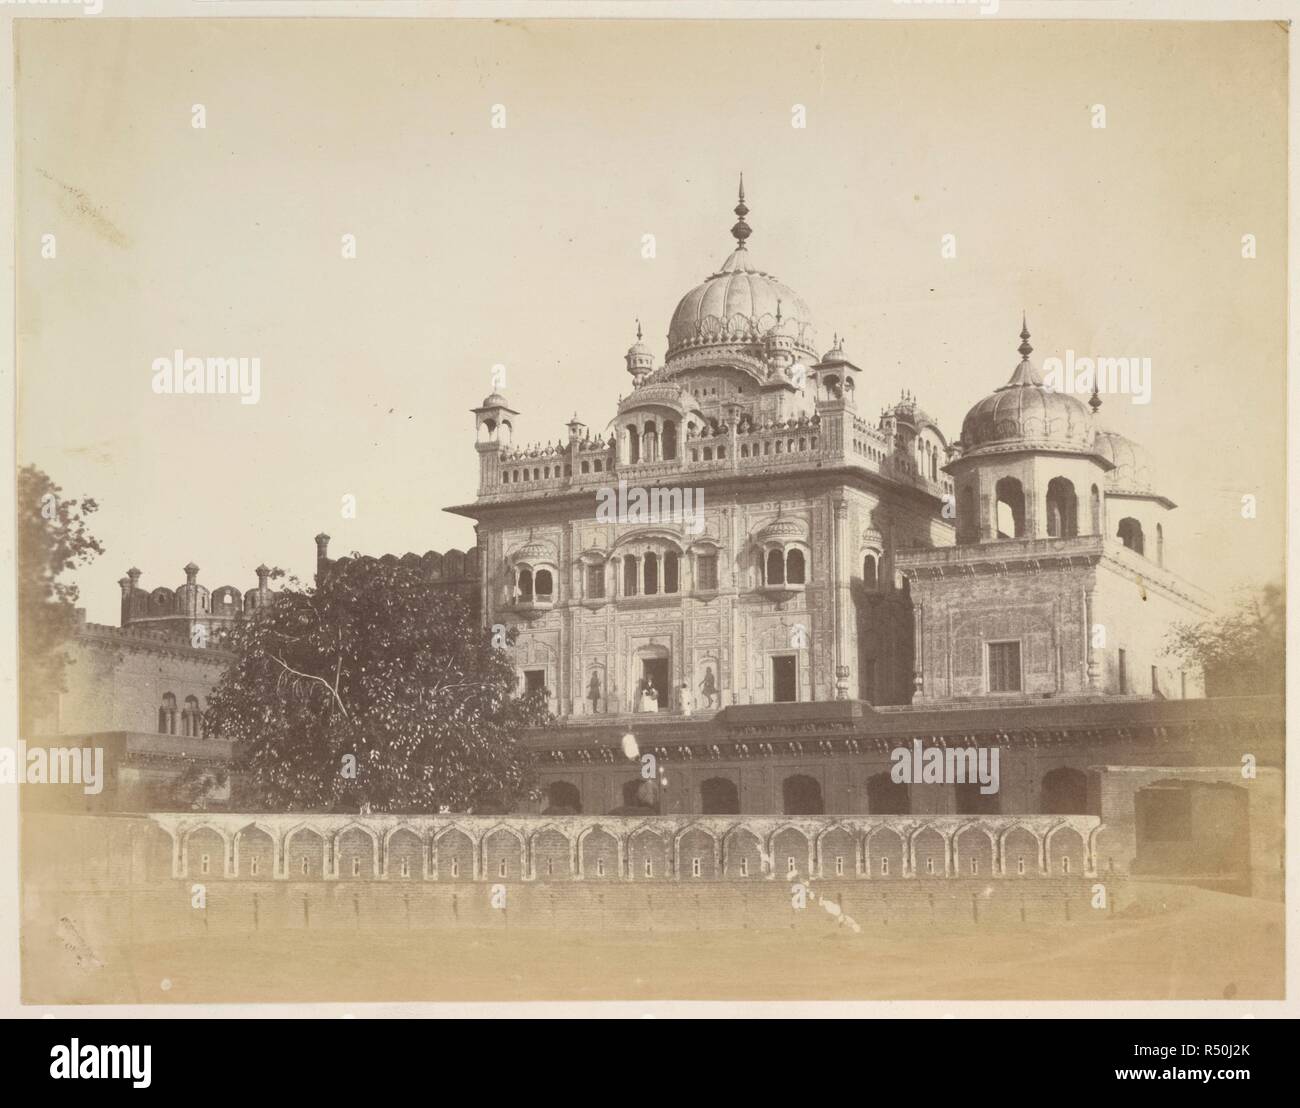 La tomba o il cenotafio di Maharaja Runjeet Singh, Lahore. Brandreth collezione: 'viste in Simla, Cashmere e la Punjaub'. 1860s. Fotografia. Fonte: Photo 211/1(89). Autore: Sconosciuto. Foto Stock